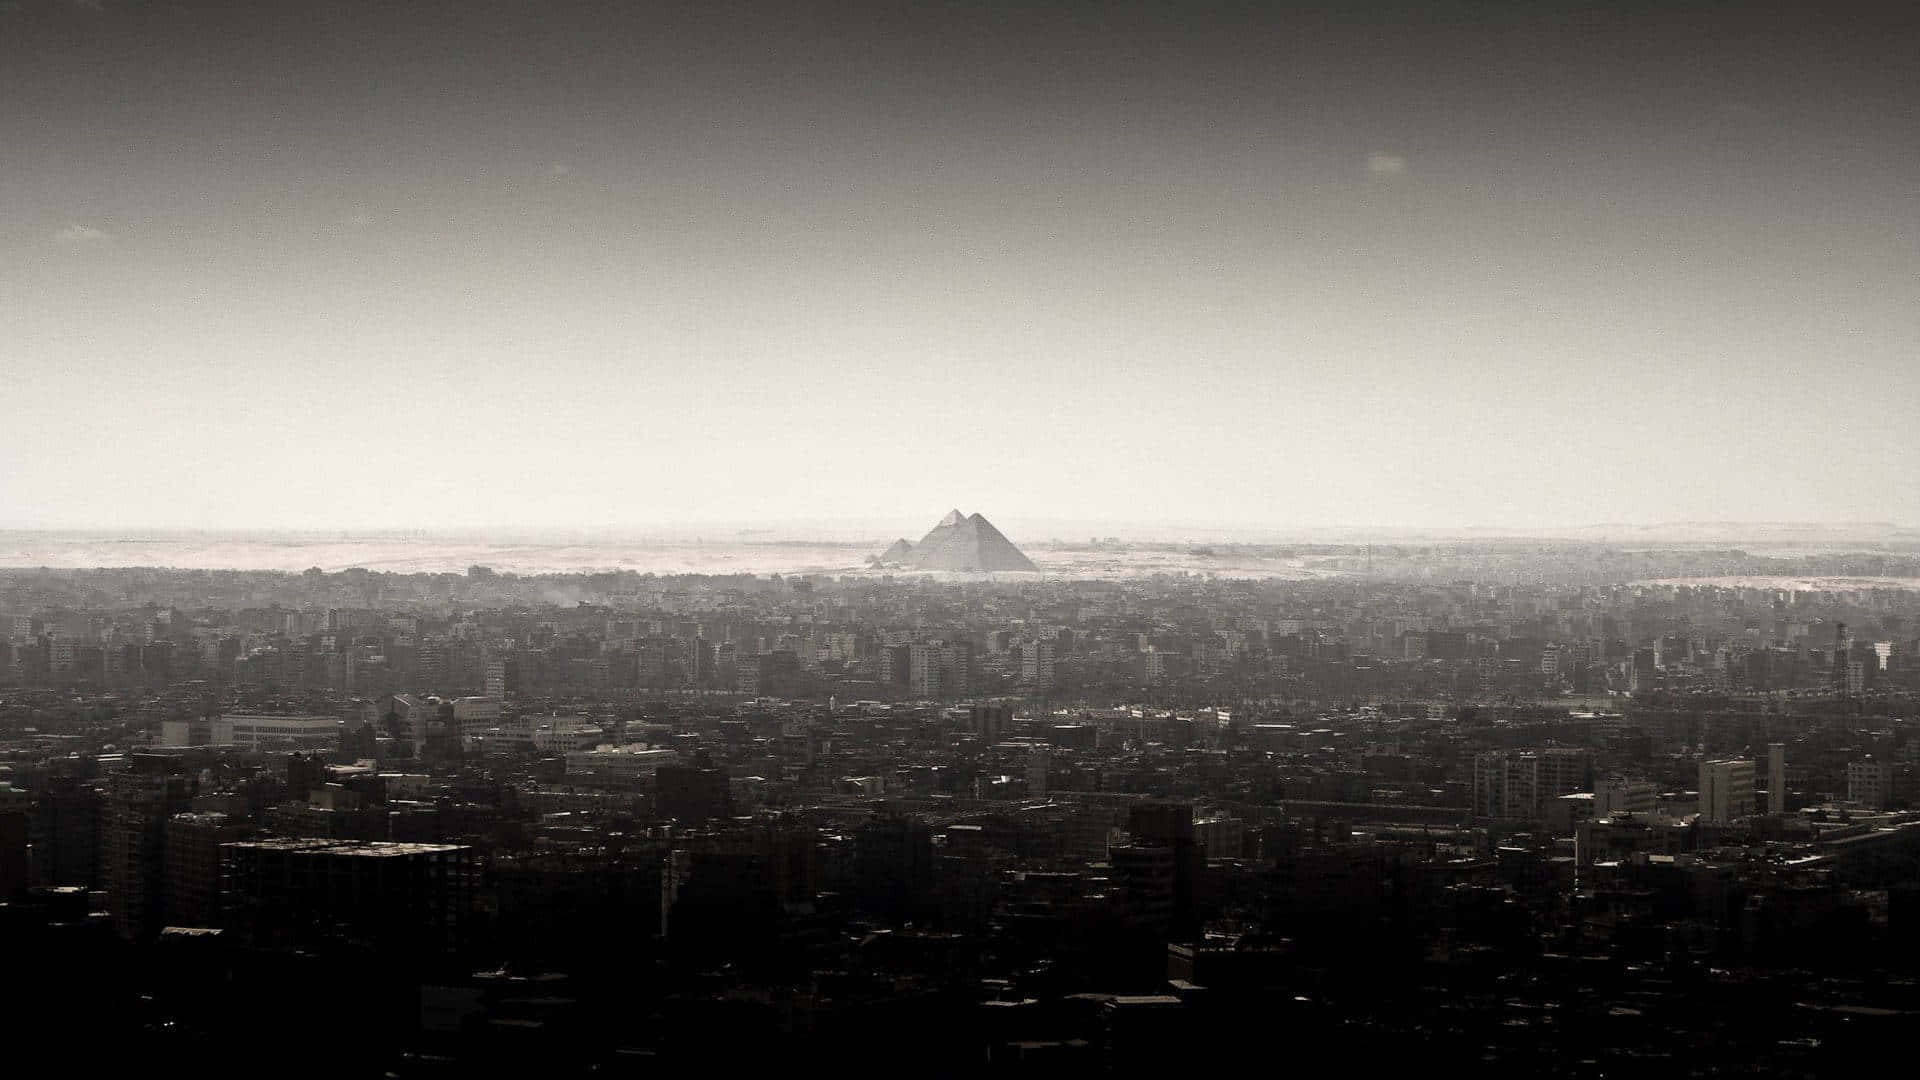 Et sort og hvidt foto af en by med et bjerg i baggrunden. Wallpaper